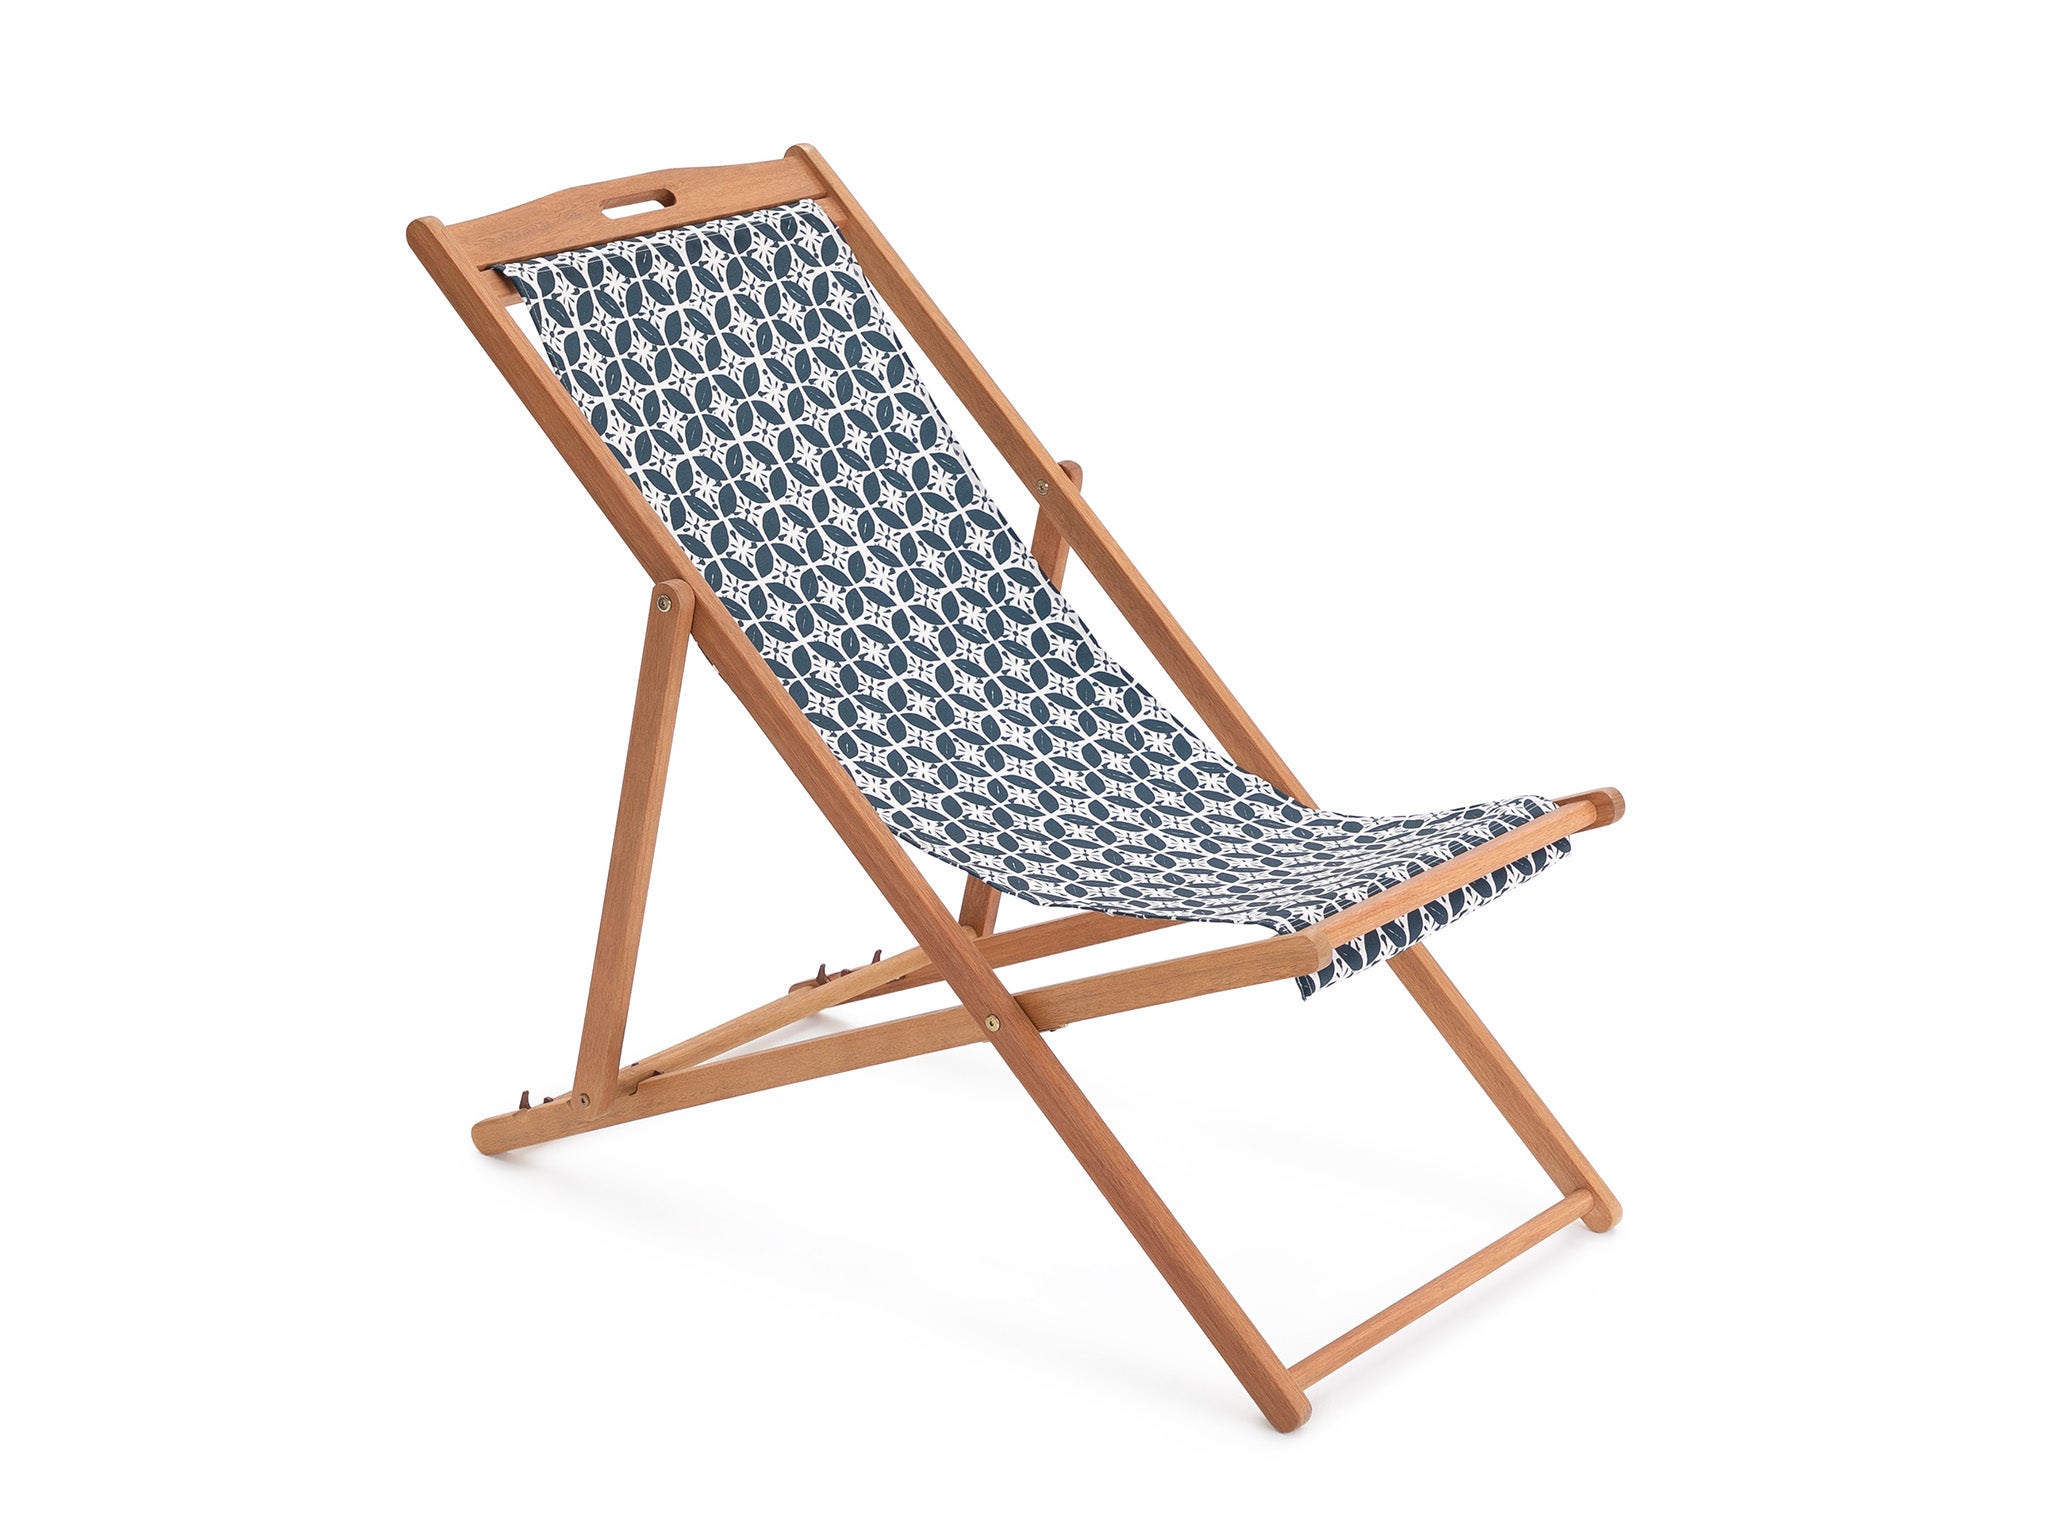 Habitat folding wooden garden deck chair